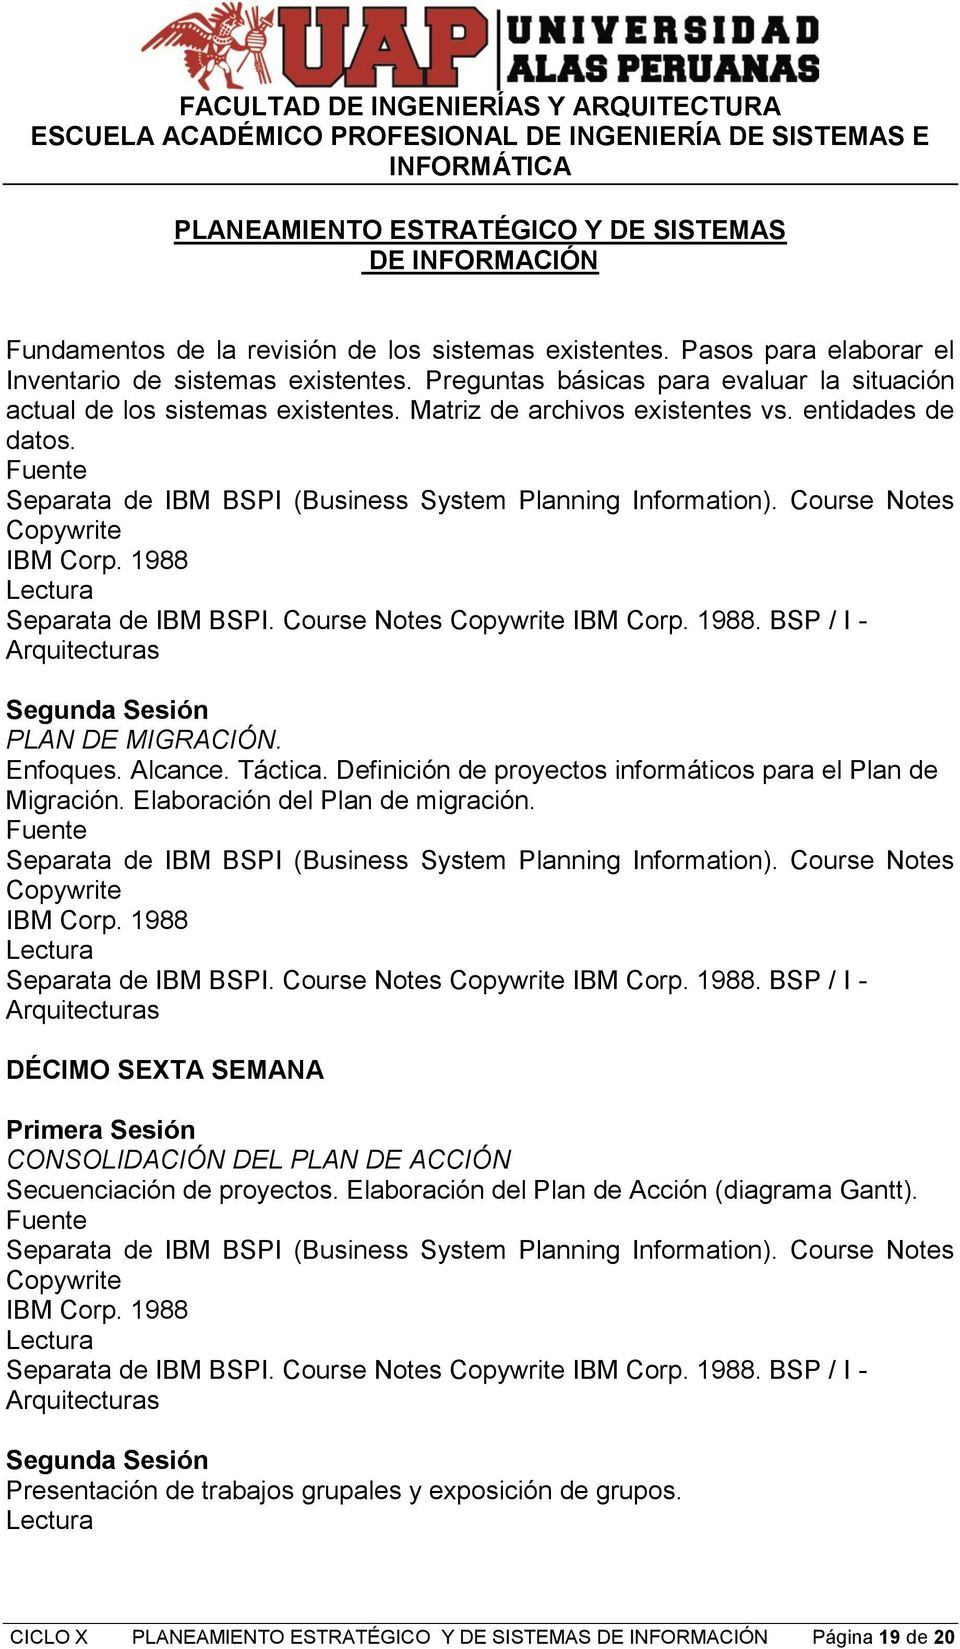 Alcance. Táctica. Definición de proyectos informáticos para el Plan de Migración. Elaboración del Plan de migración. Copywrite IBM Corp. 1988 Separata de IBM BSPI. Course Notes Copywrite IBM Corp.